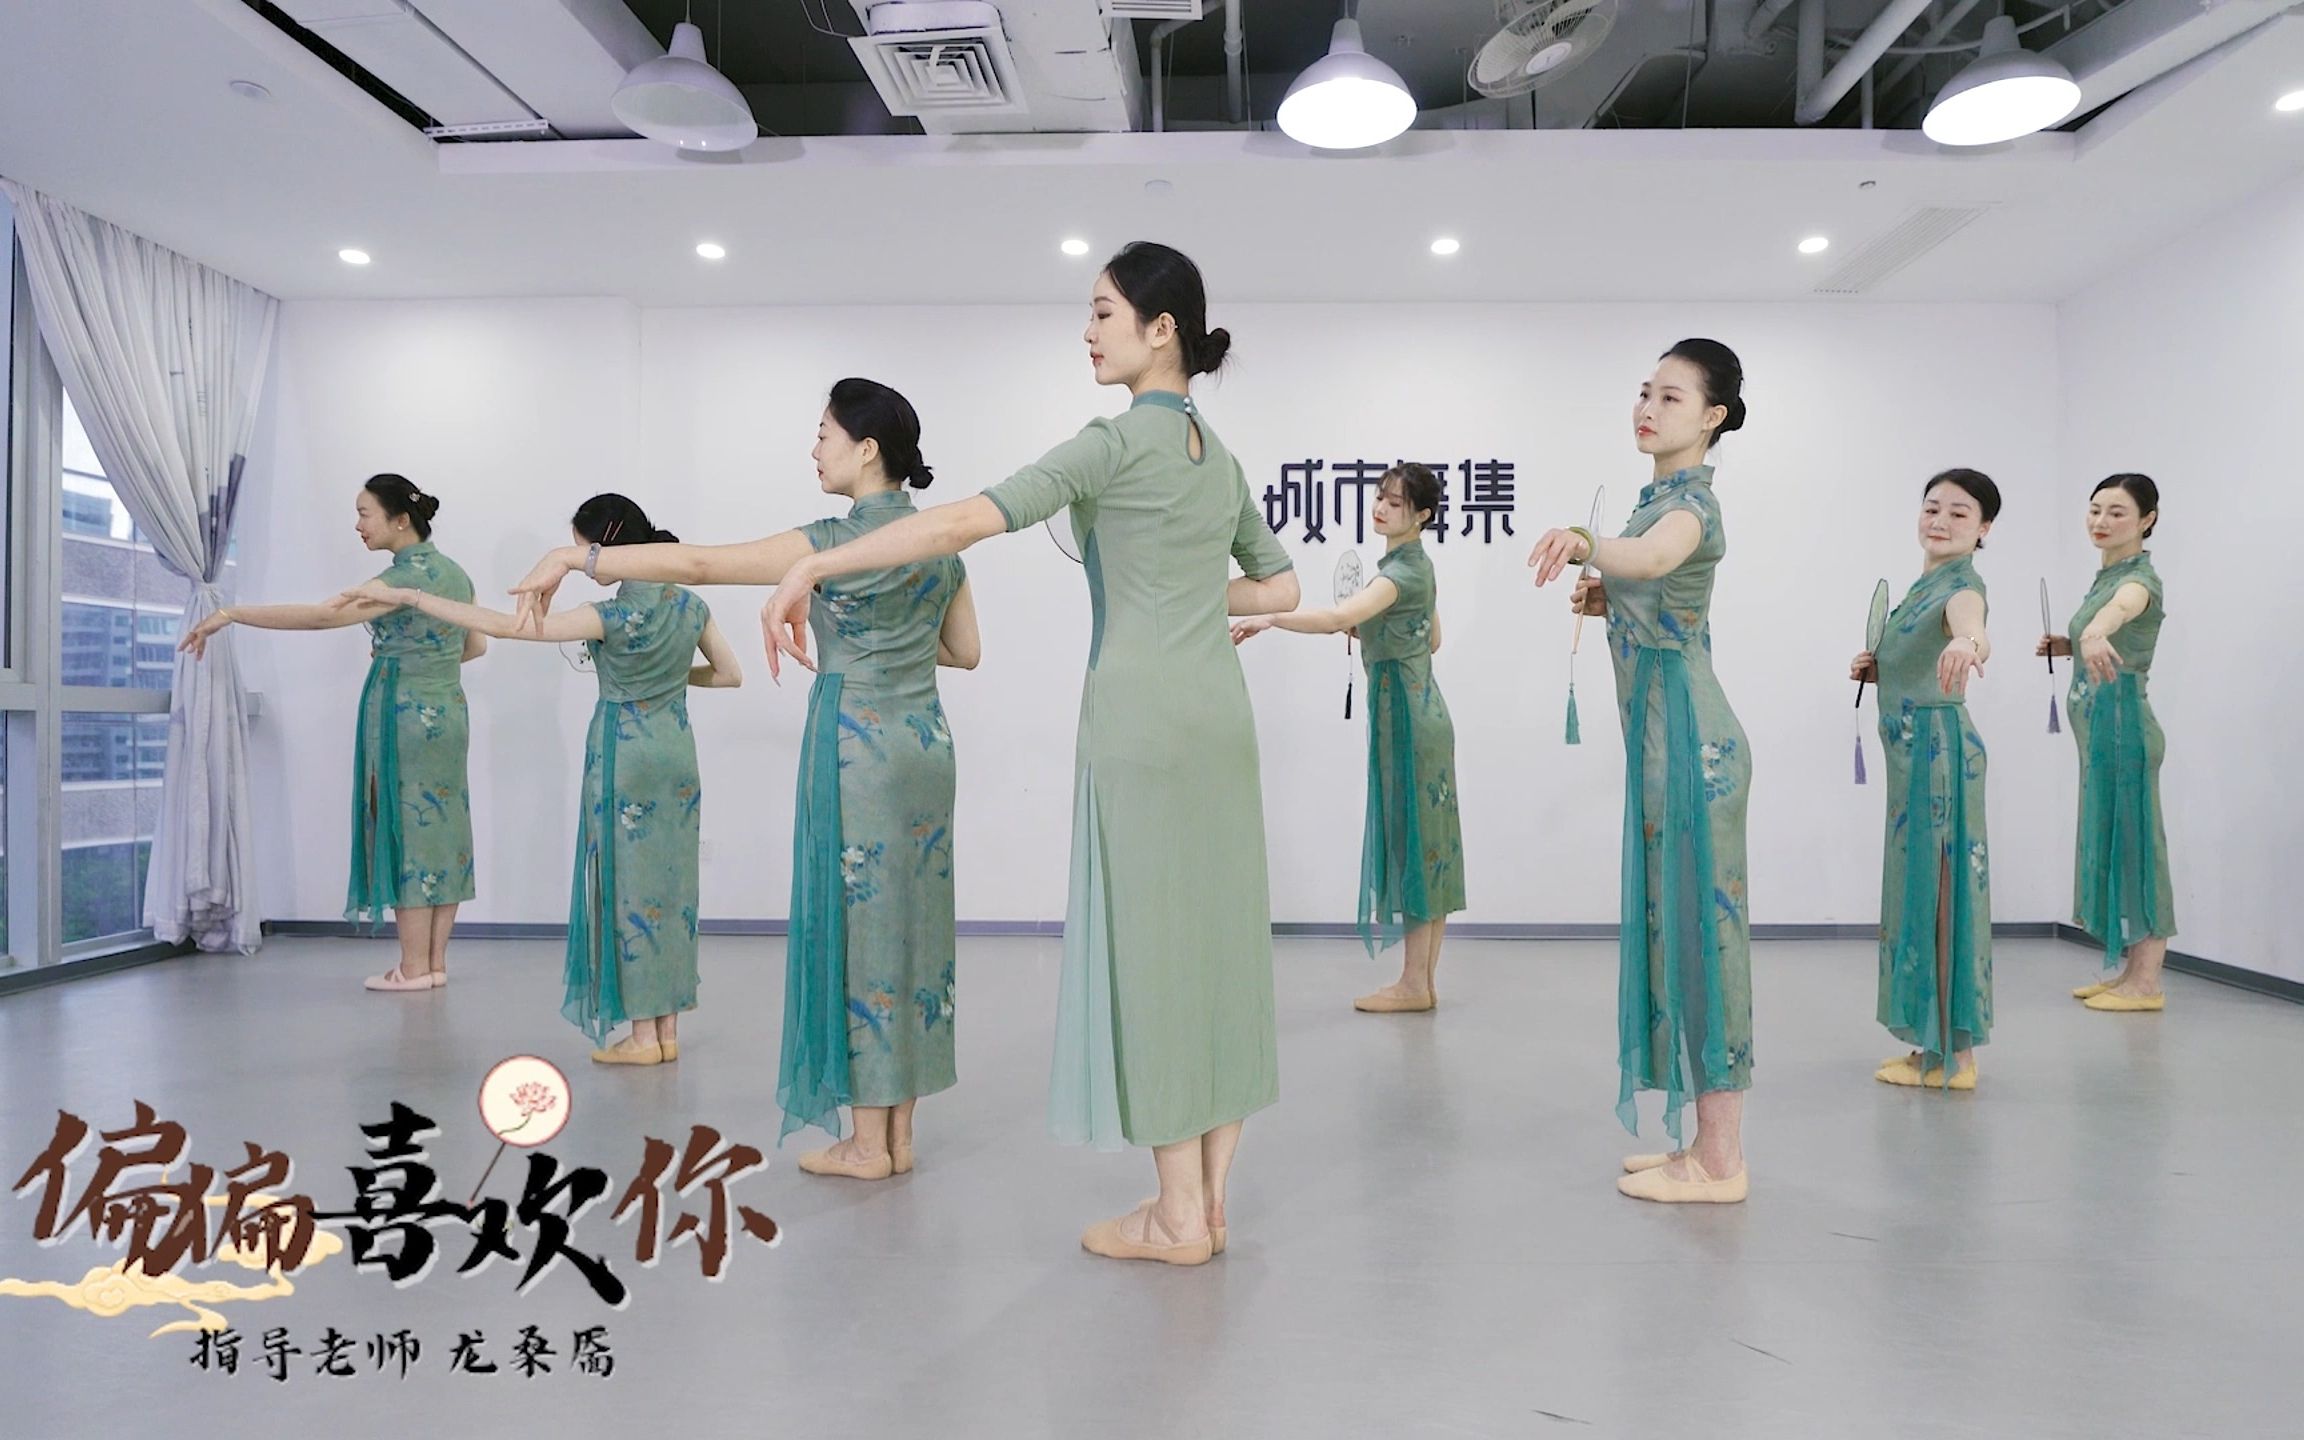 旗袍中国舞《偏偏喜欢你》，简单素净又不缺惊艳感